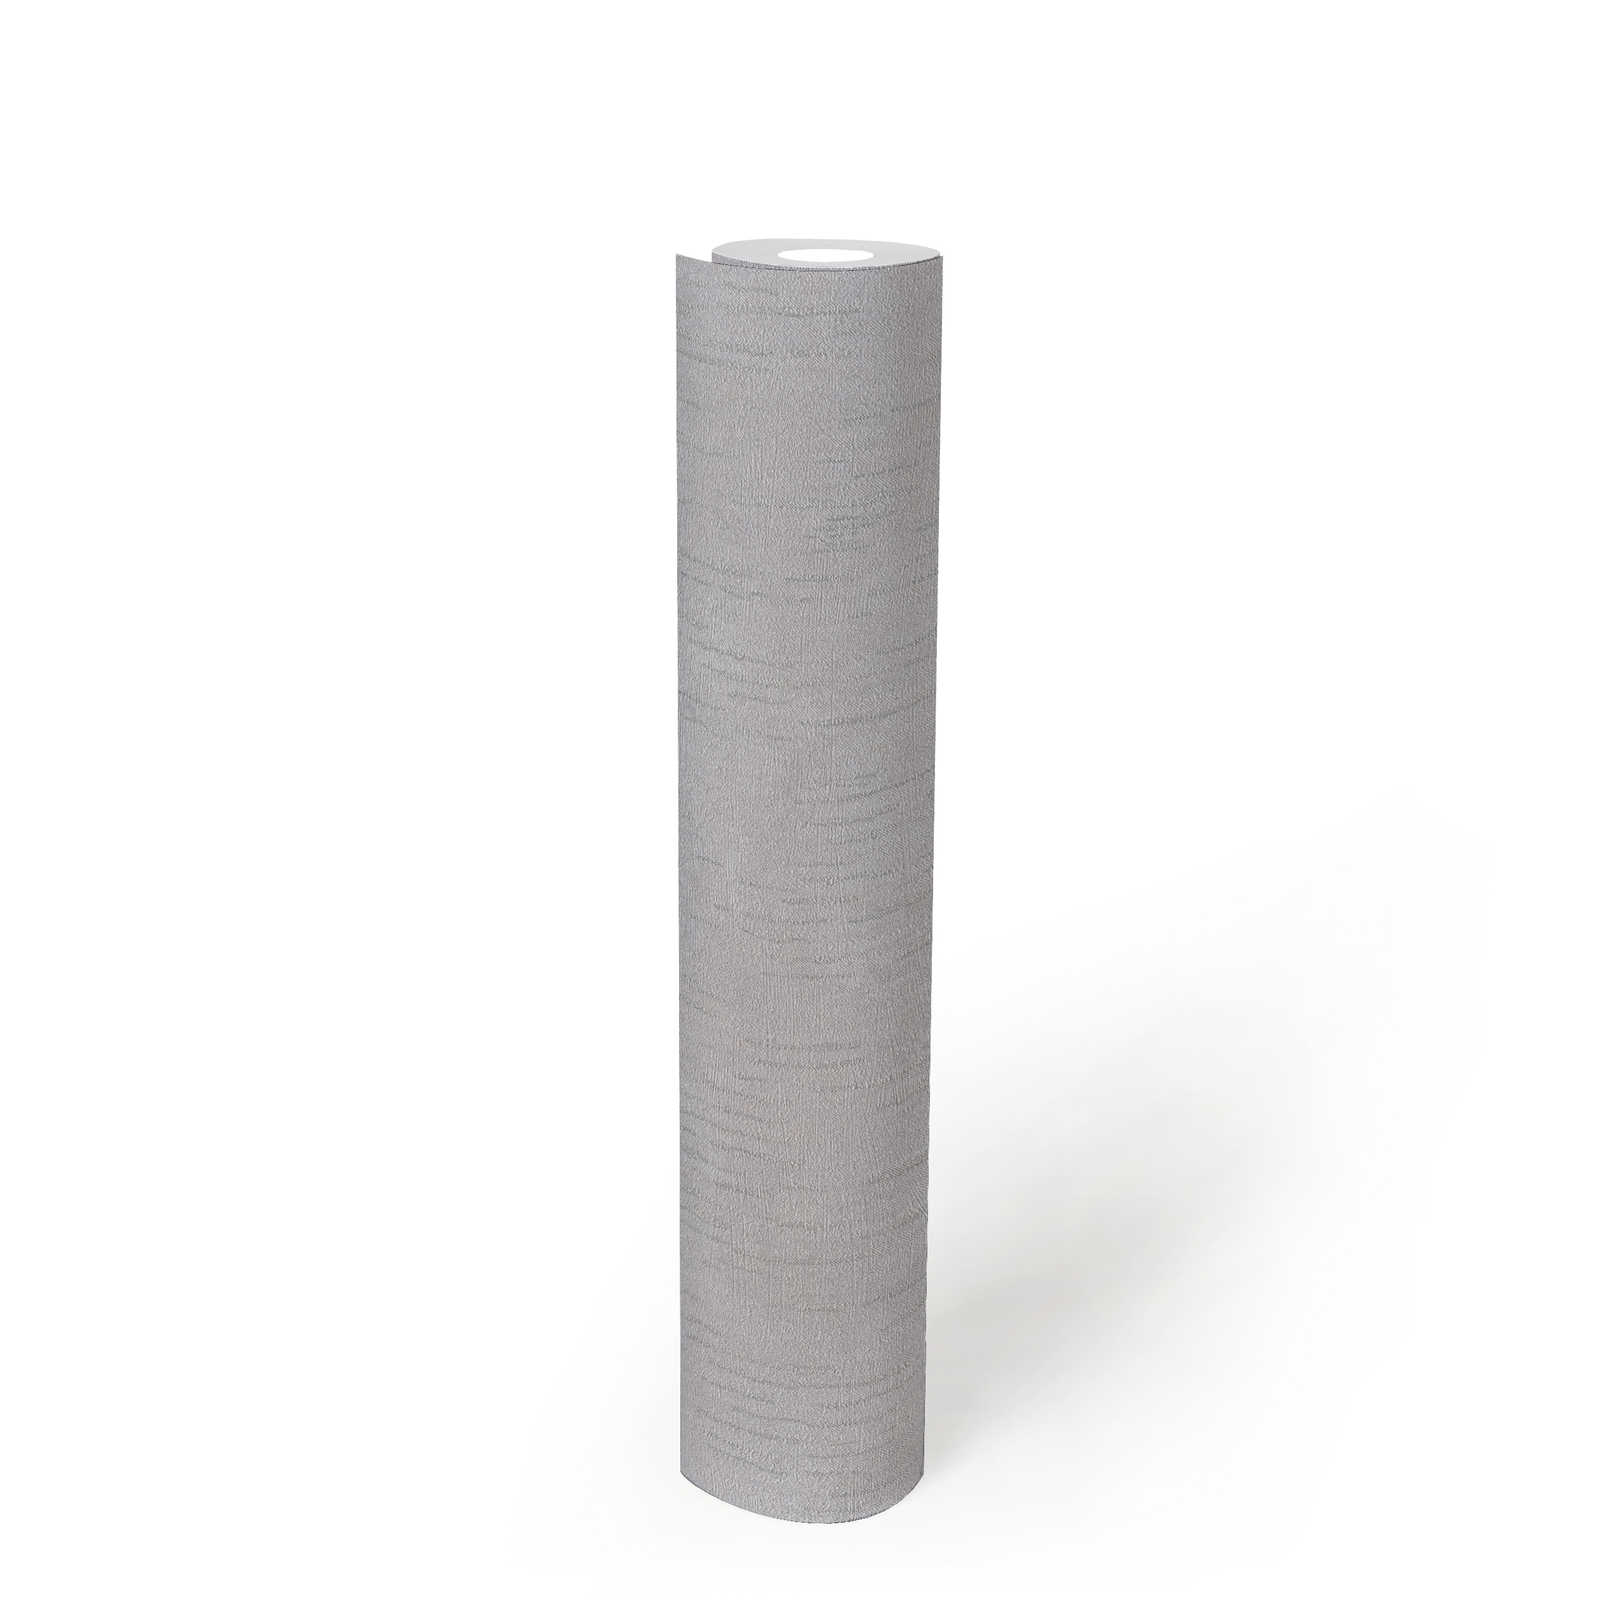             Gedessineerd glansbehang met structuurdesign - grijs, metallic
        